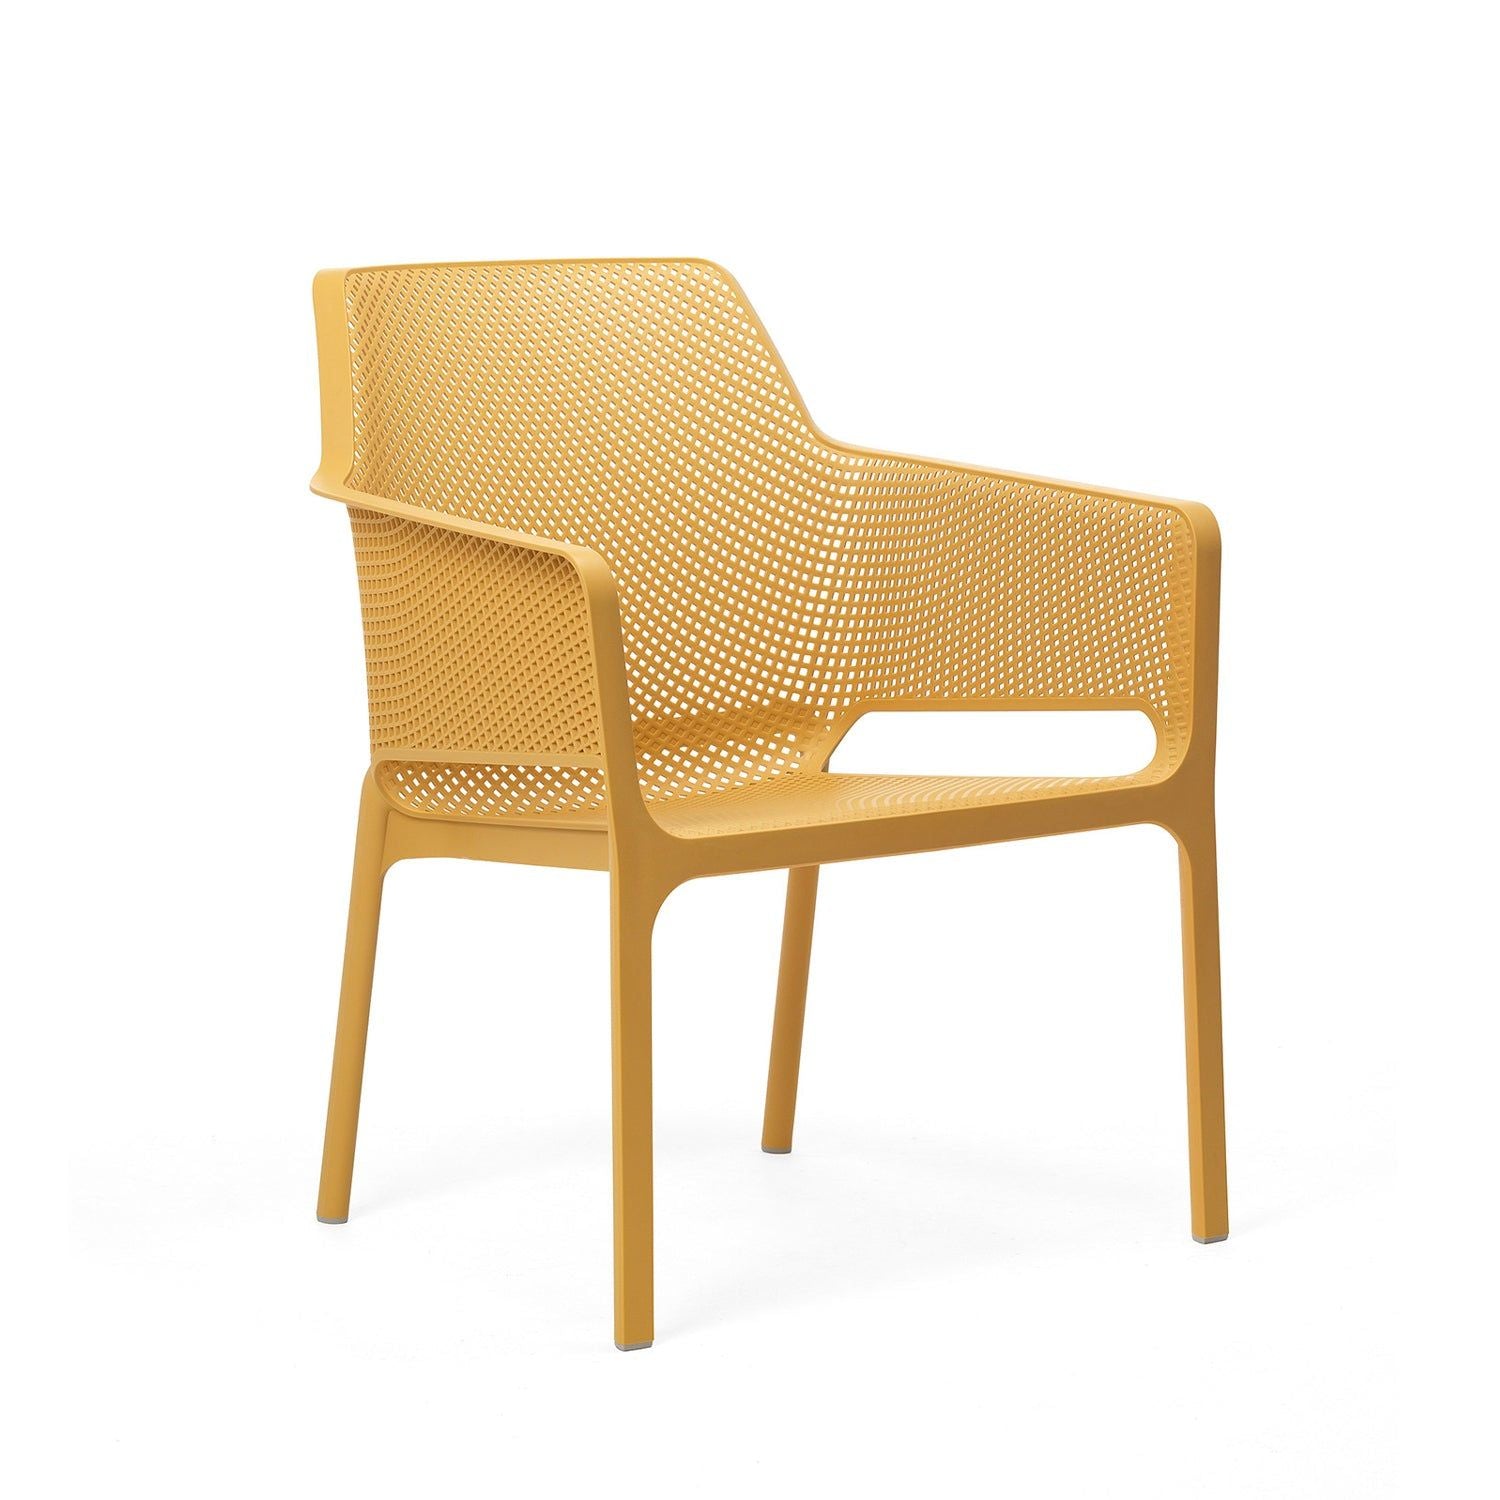 Net Relax Garden Chair By Nardi - Set Of 6 - Mustard